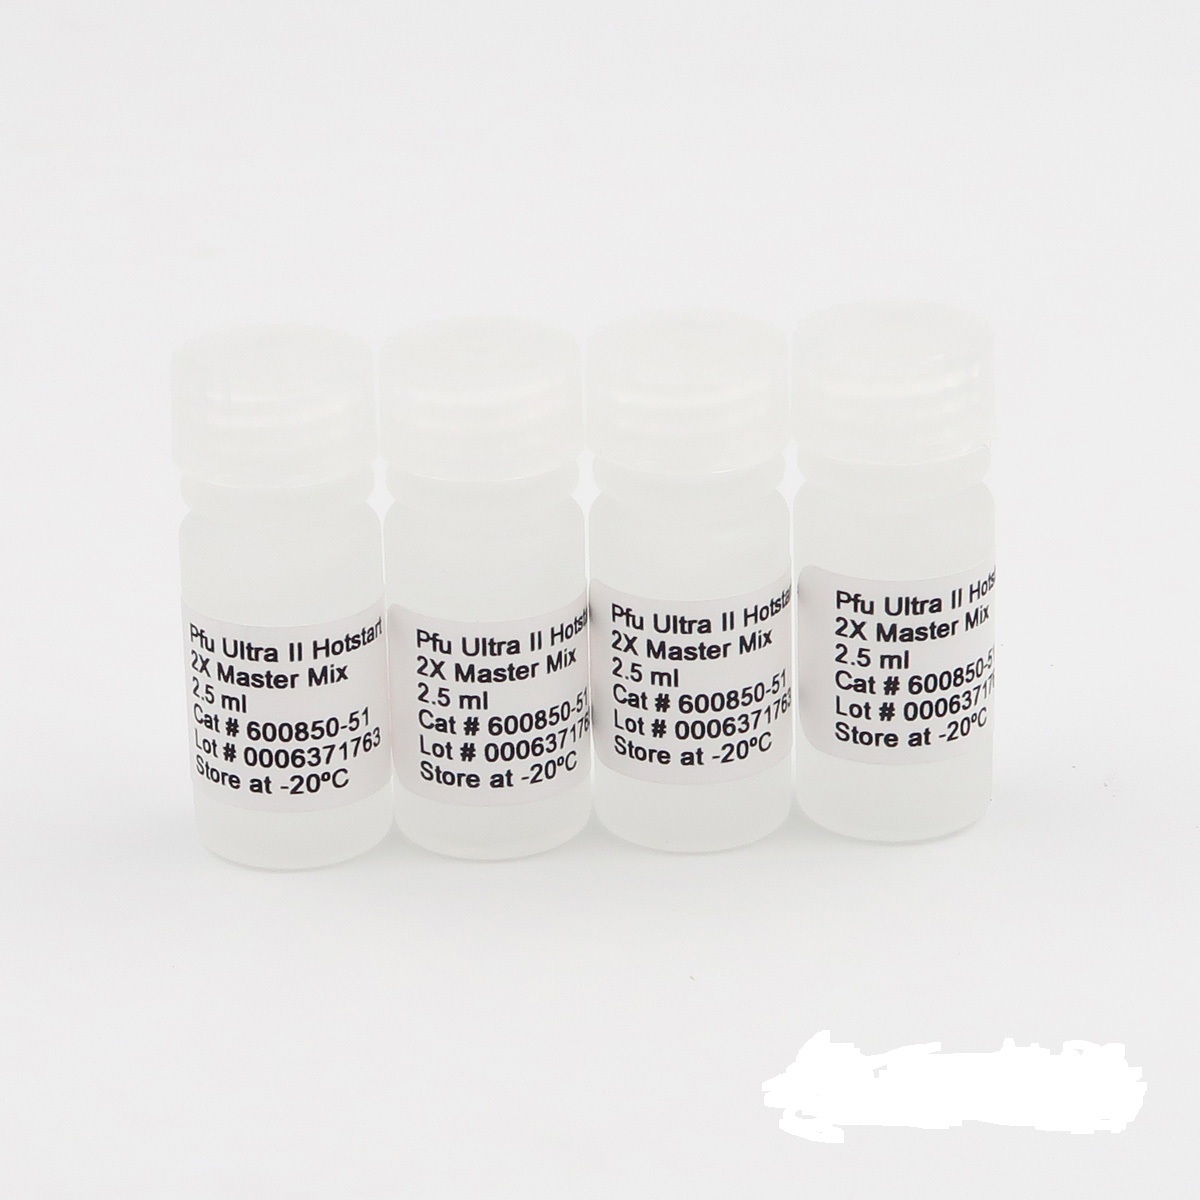 番茄斑萎病毒RT-PCR试剂盒